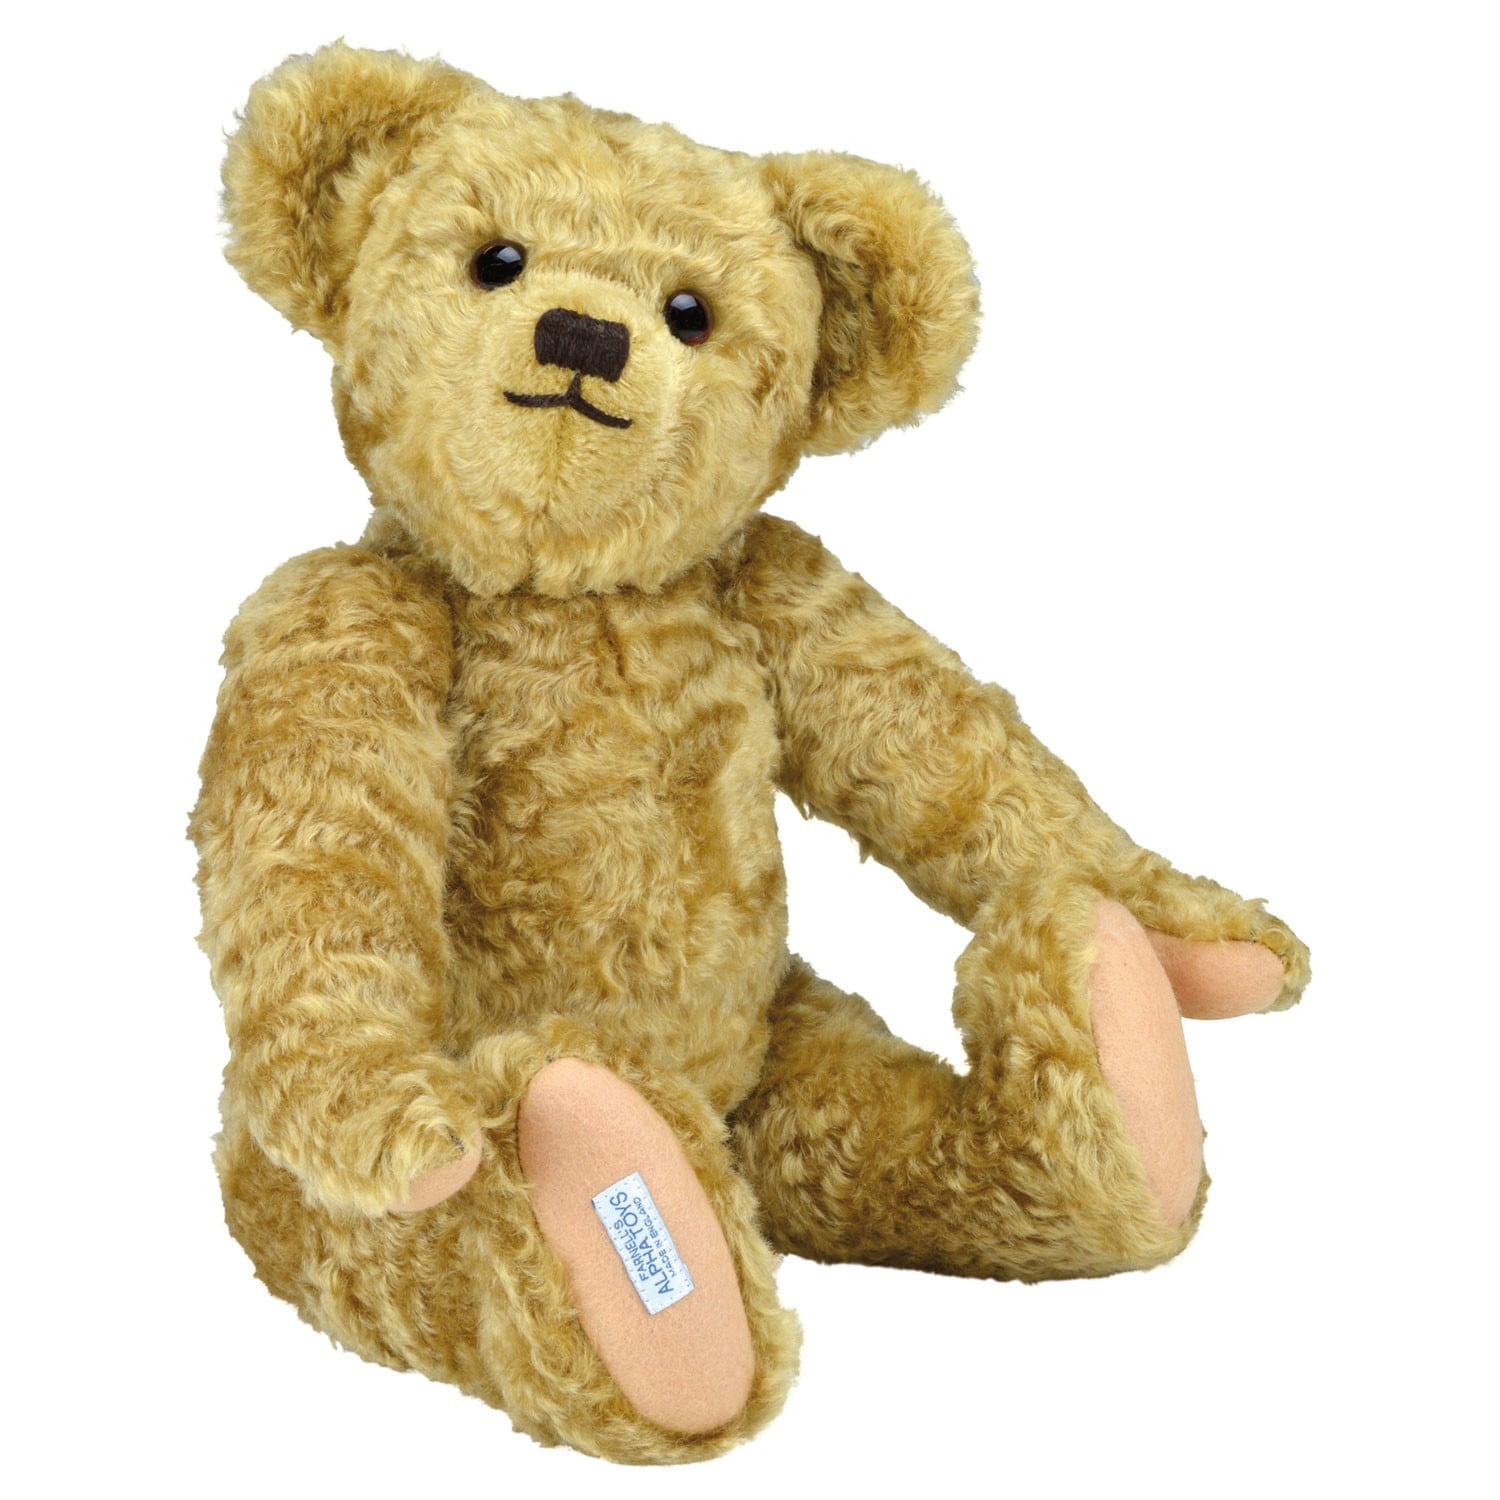 Edward the Bear Plush Stuffed Animal - Winnie-the-Pooh Teddy Bear - La -  